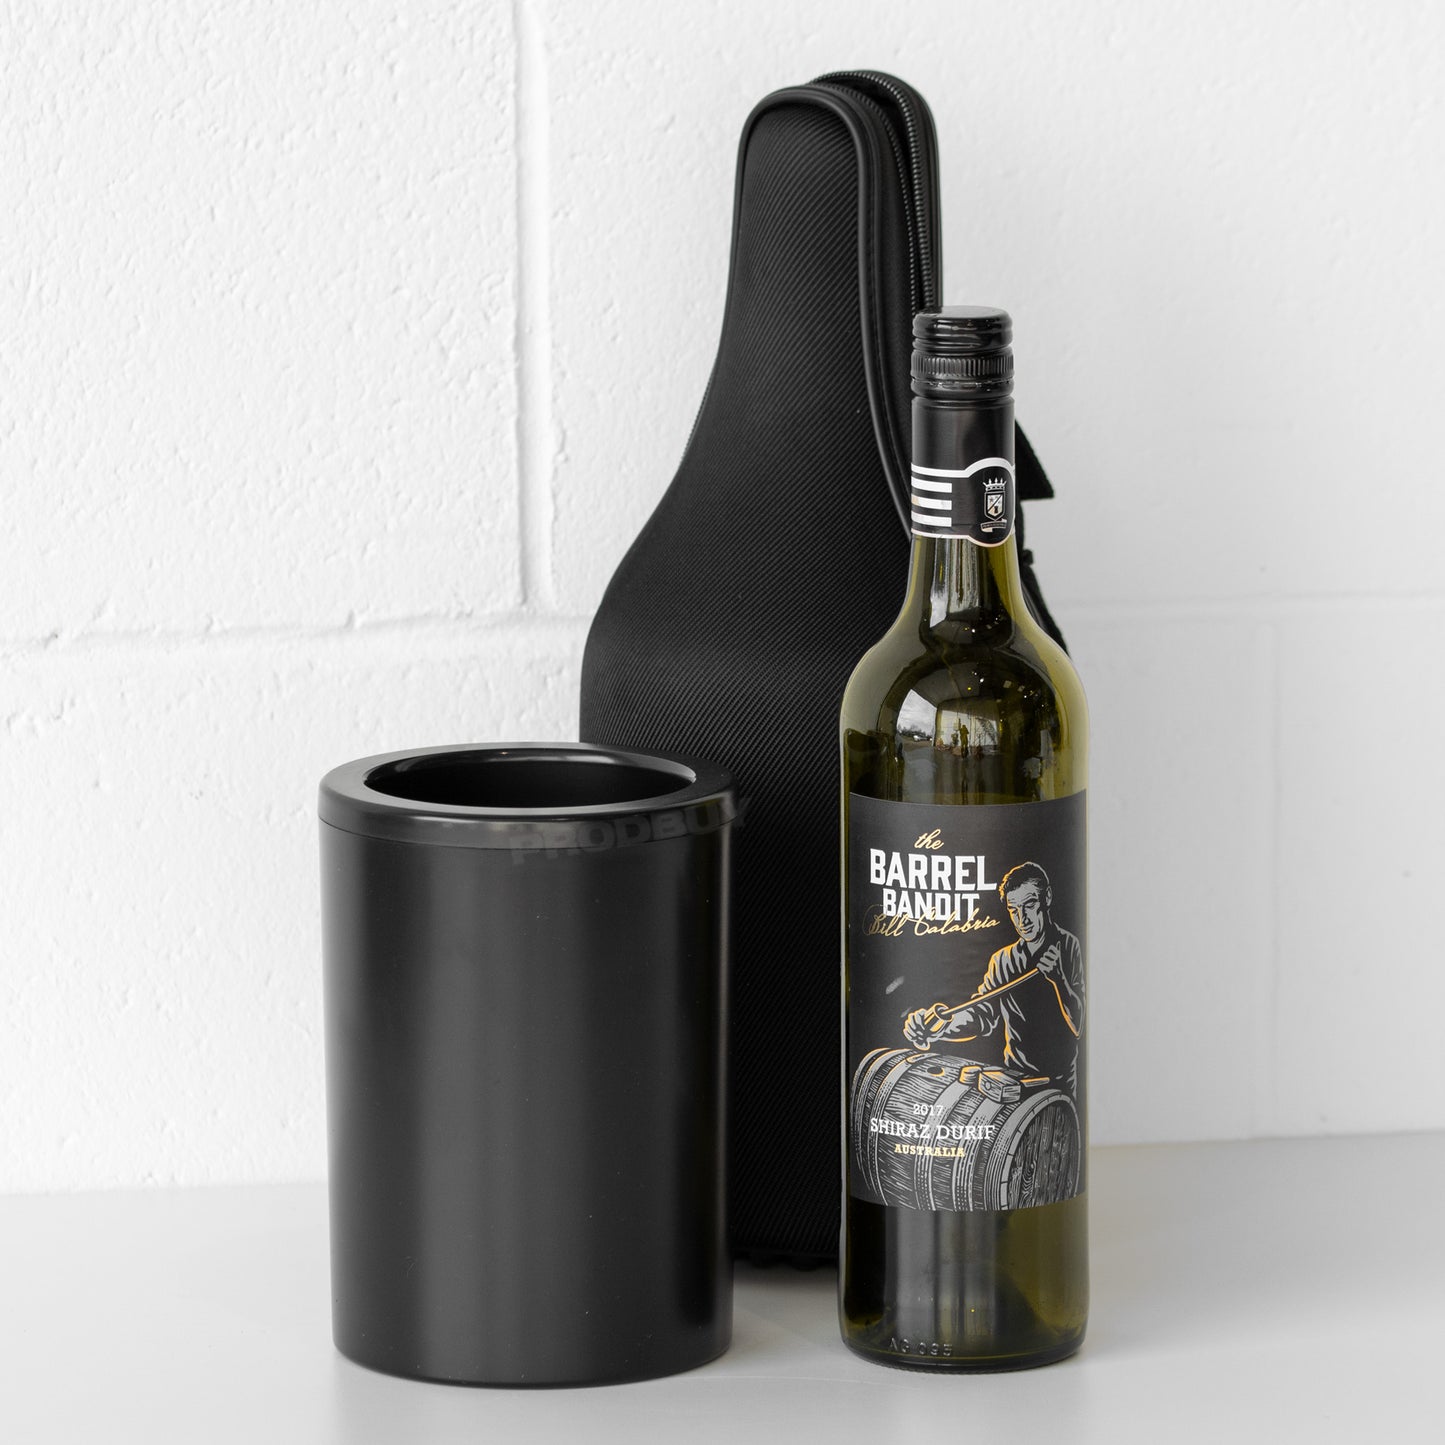 CellarDine Wine Bottle Picnic Cooler Bag